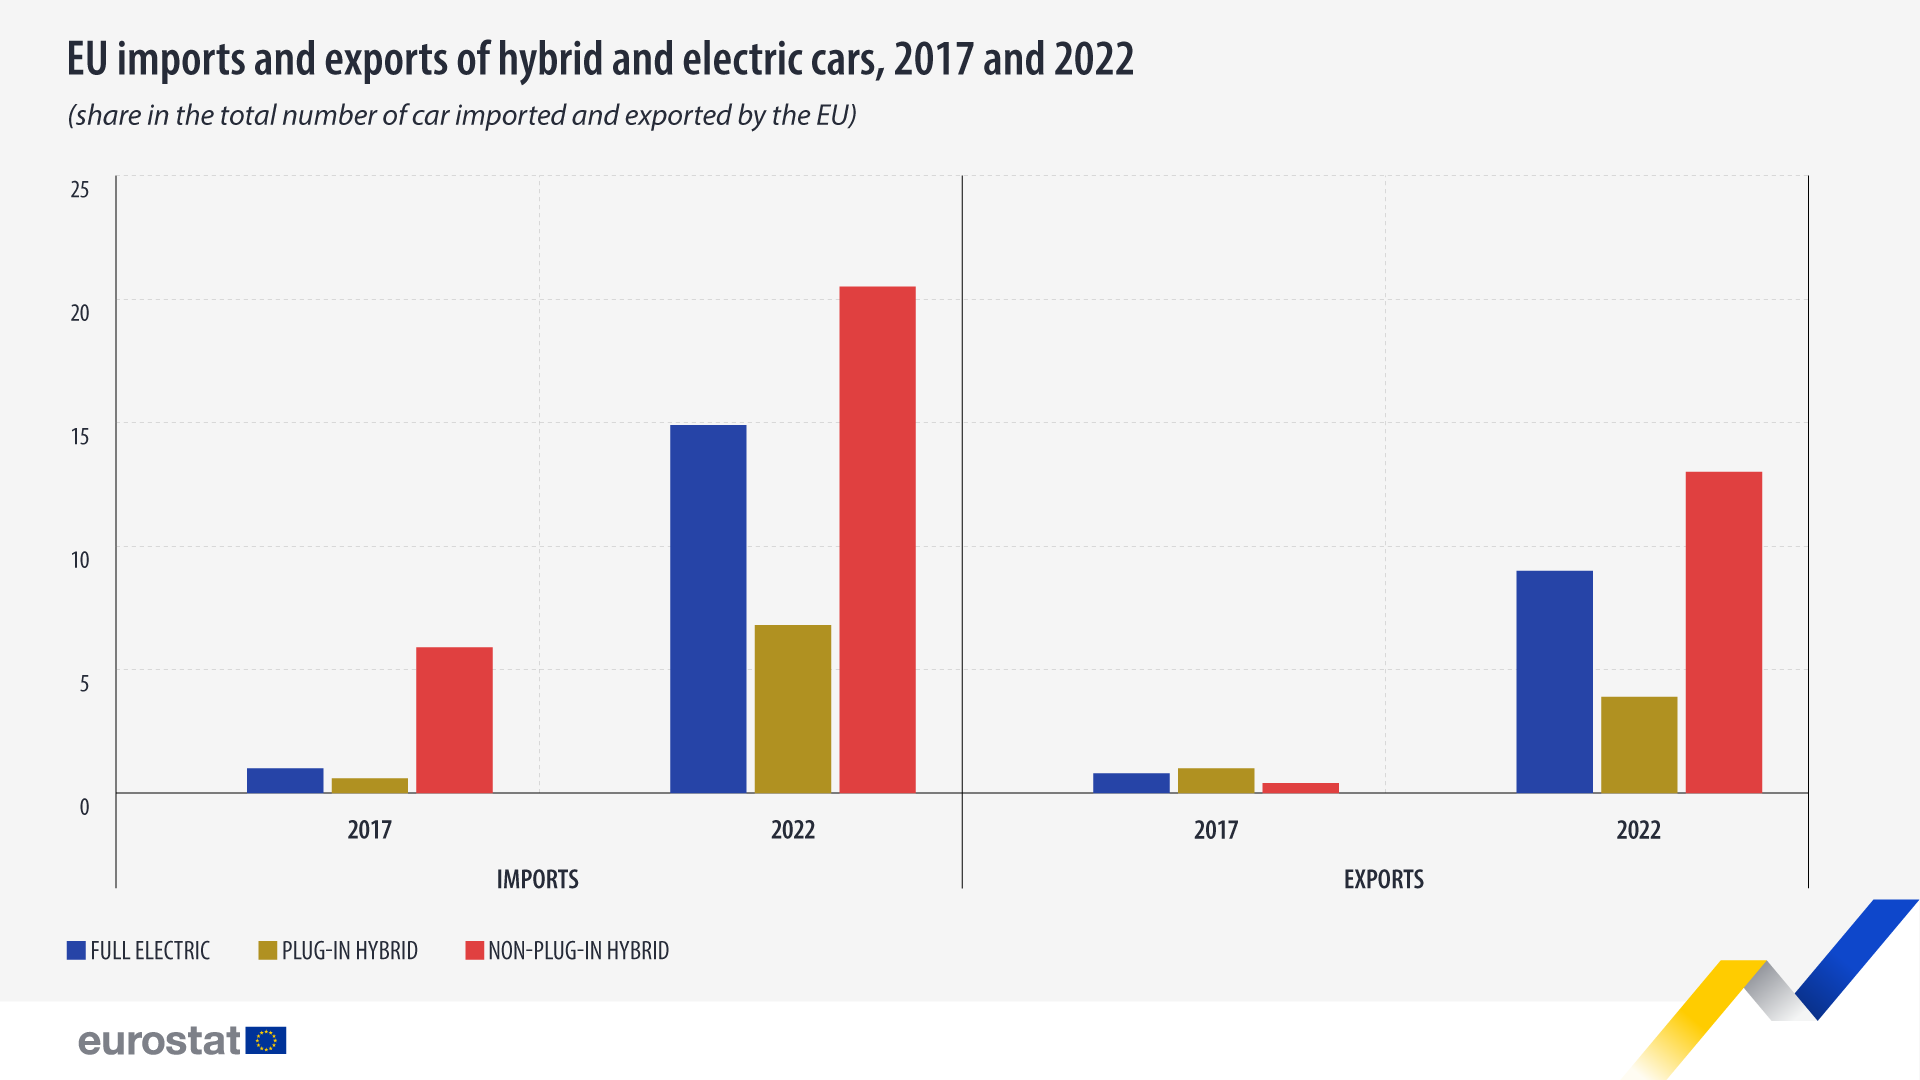 Tulpdiagramm: ELi hübriid- ja elektriautode import ja eksport, 2017 ja 2022, osatähtsus ELi imporditud ja eksporditud autode koguarvus